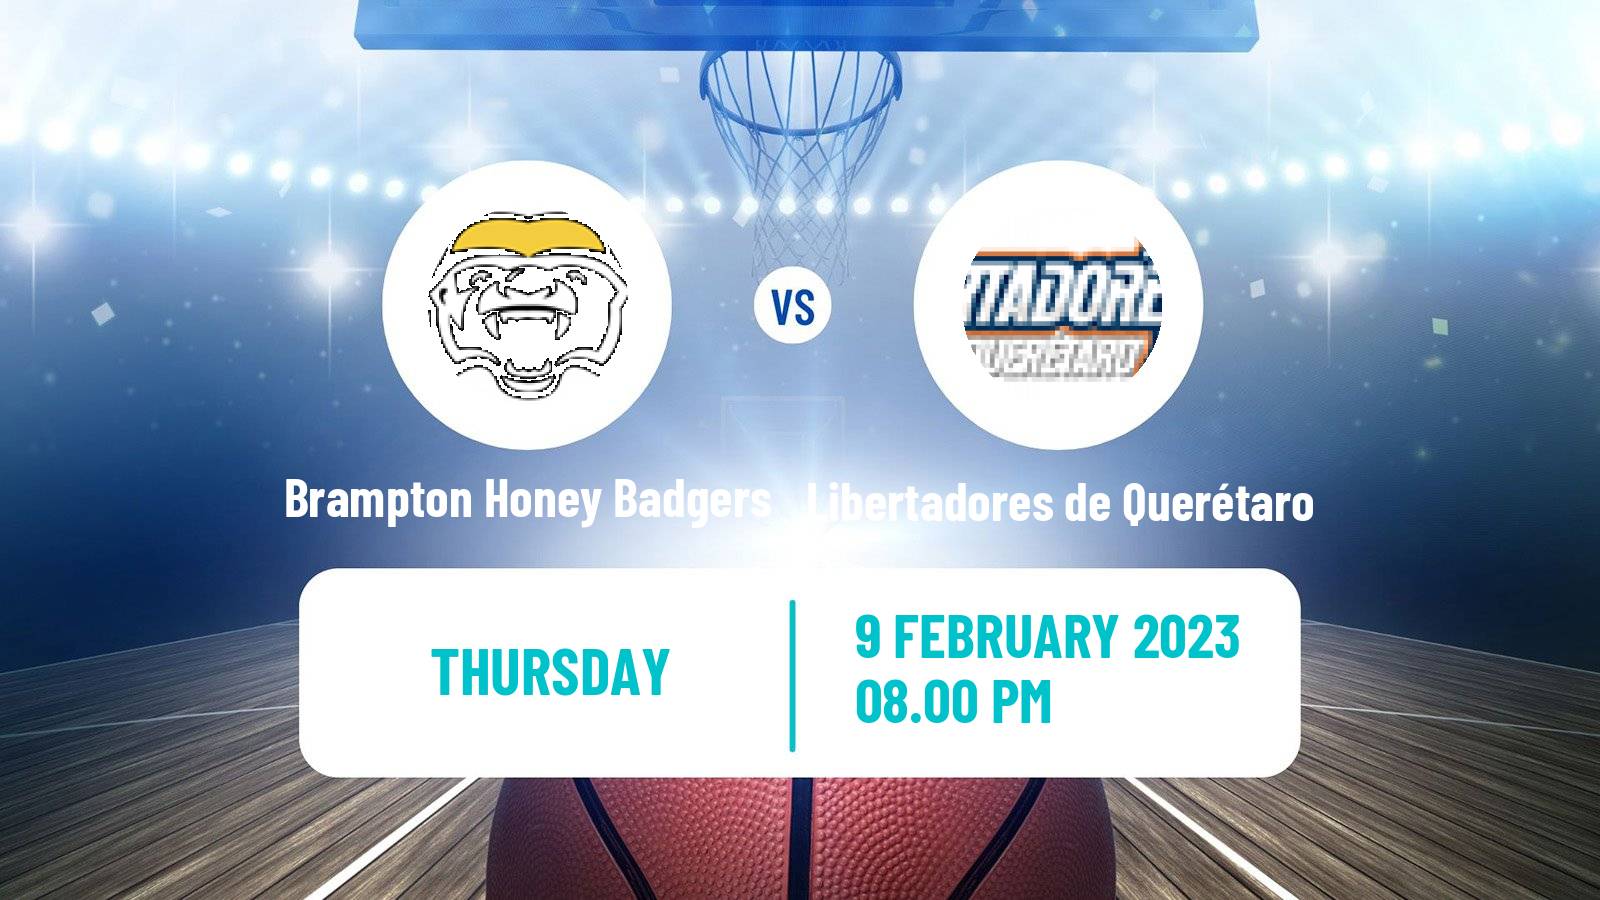 Basketball Champions League Americas Basketball Brampton Honey Badgers - Libertadores de Querétaro